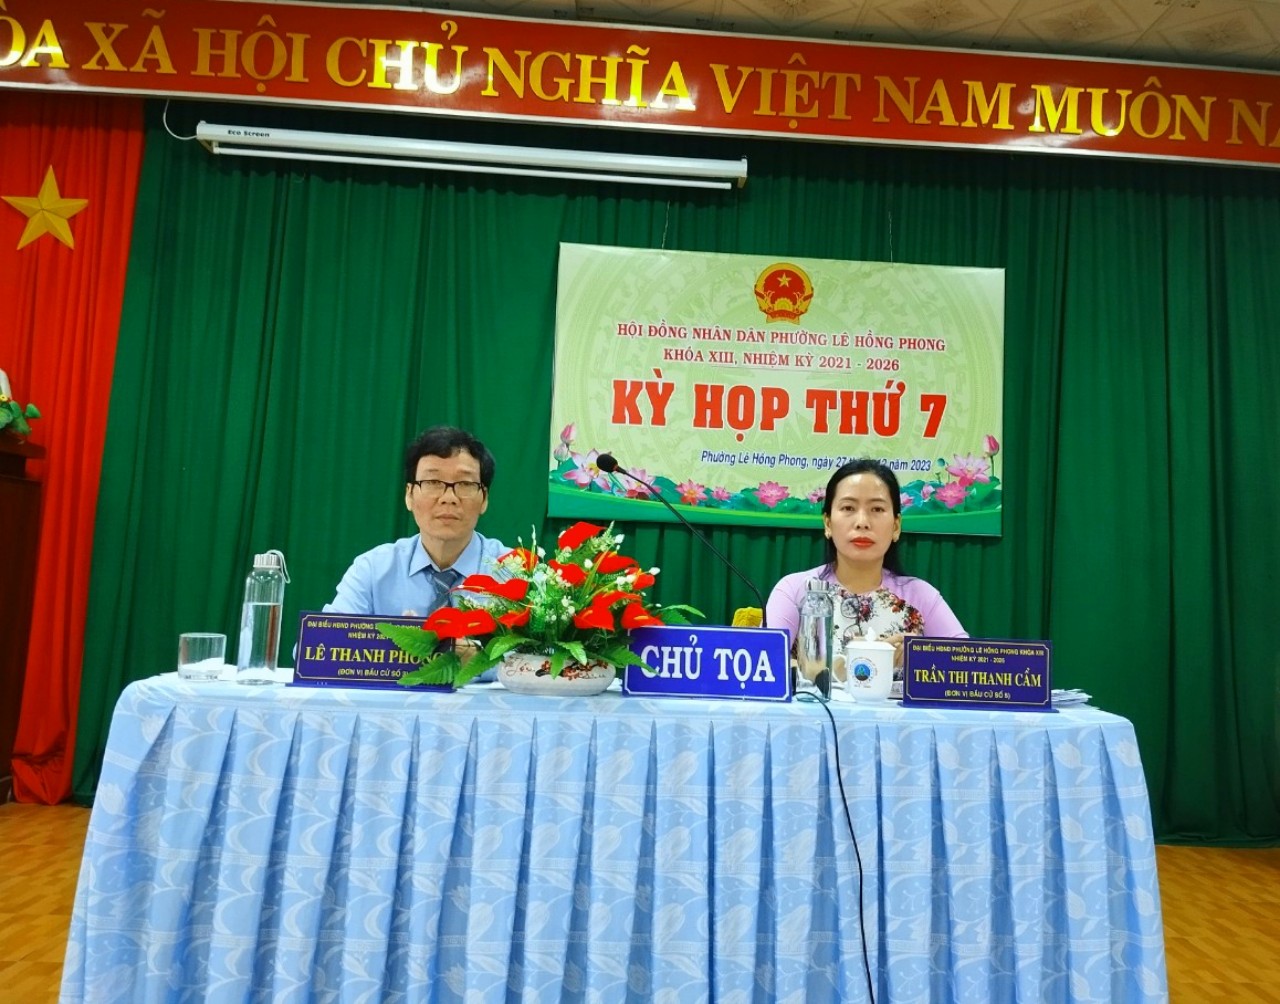 HĐND phường Lê Hồng Phong tổ chức kỳ họp thứ 7 khóa XIII, nhiệm kỳ 2021 - 2026